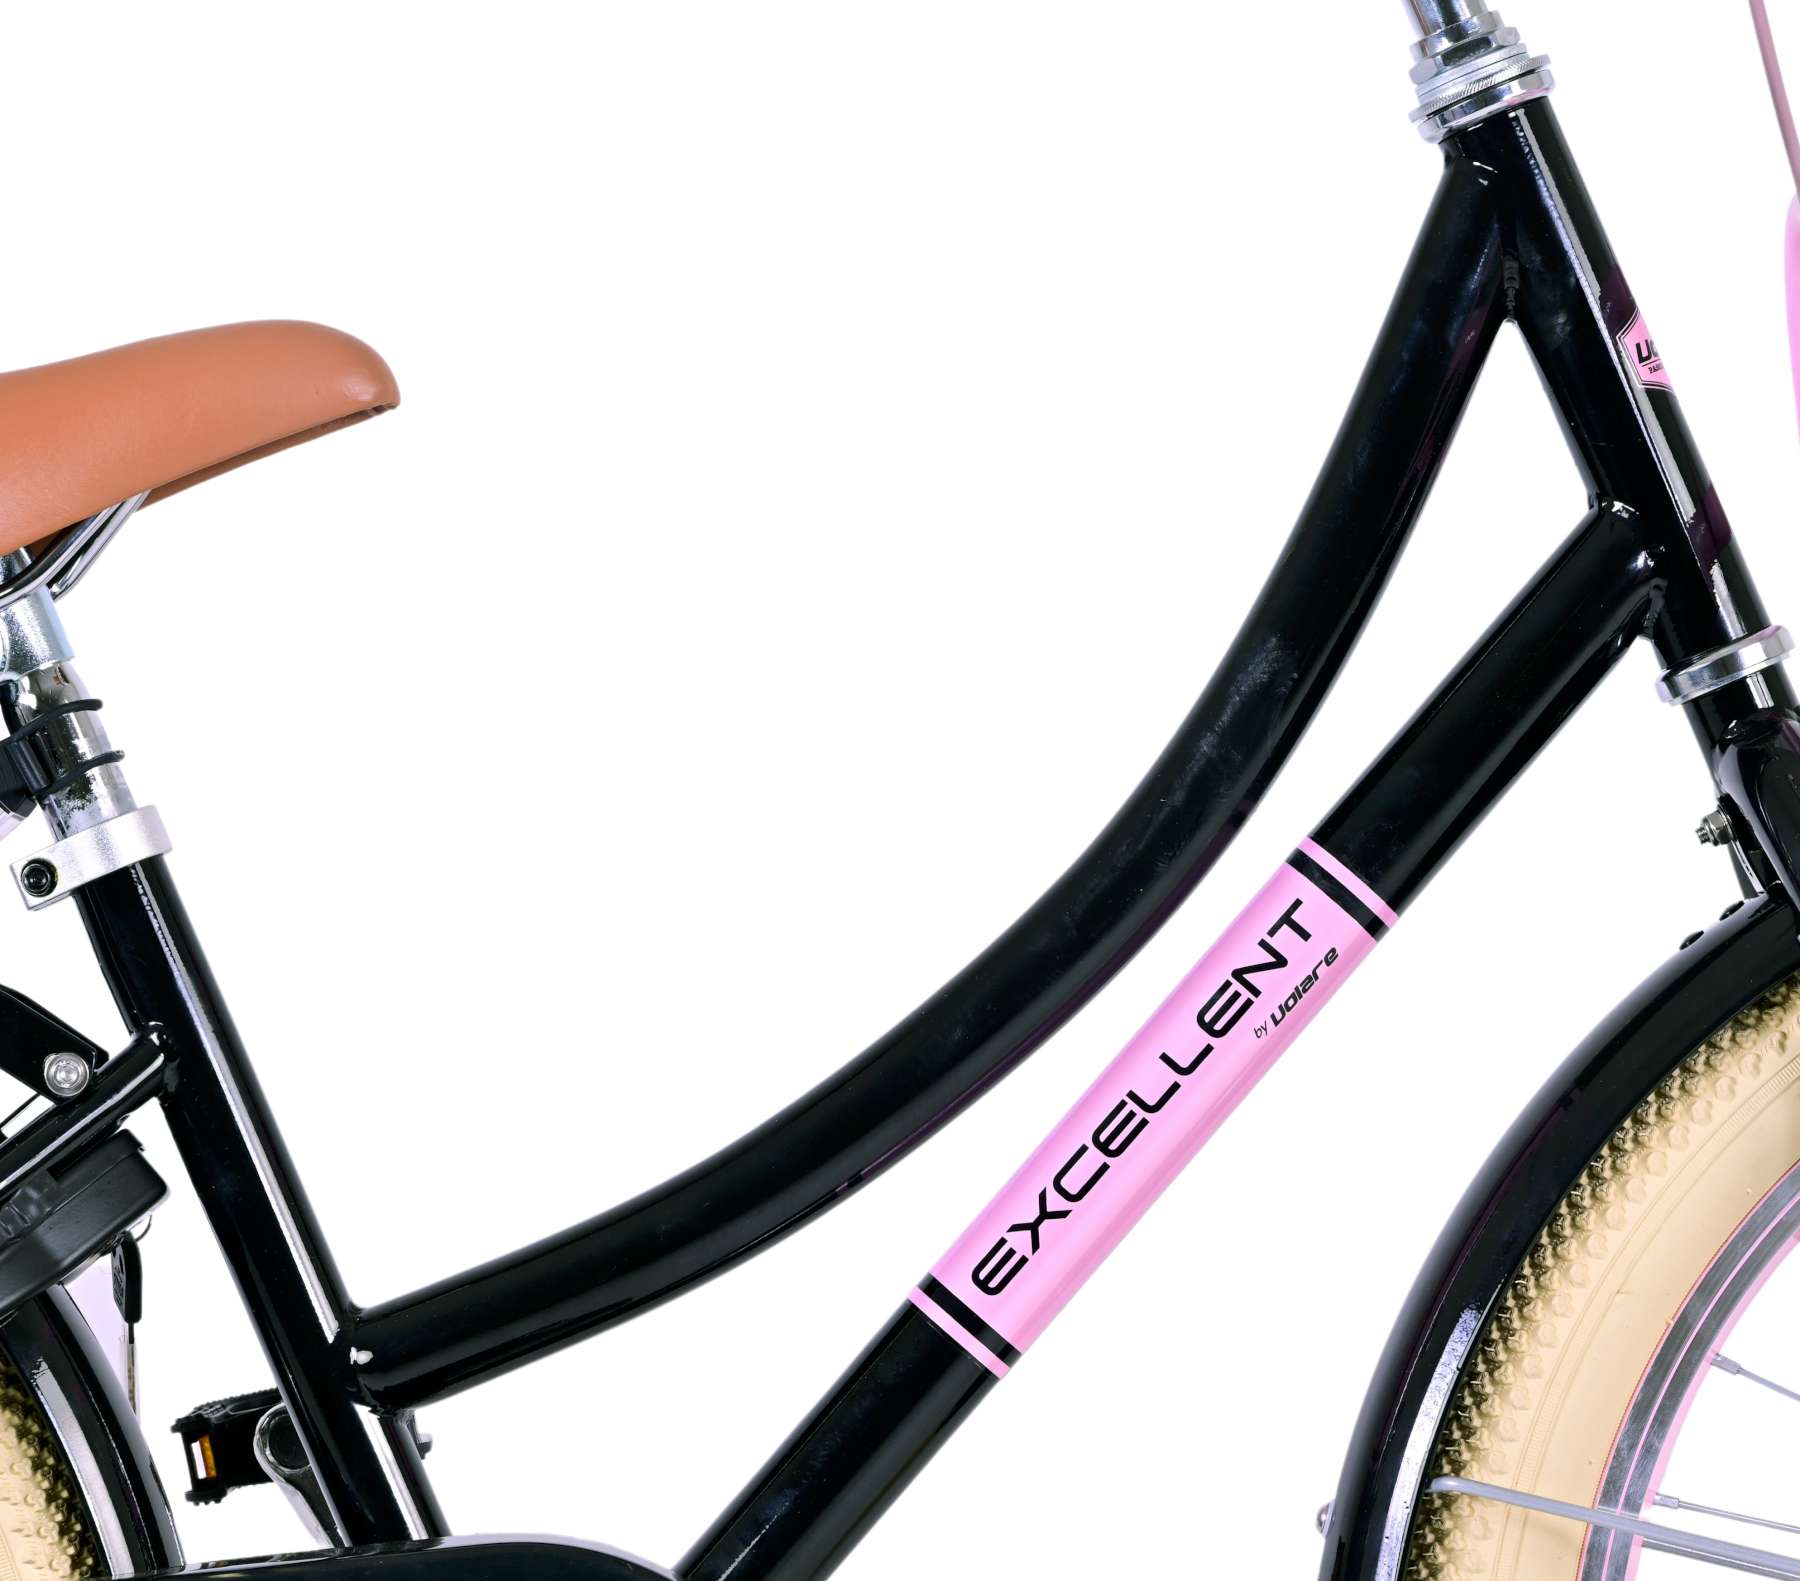 Kinderfahrrad Excellent Fahrrad für Mädchen 20 Zoll Kinderrad Schwarz